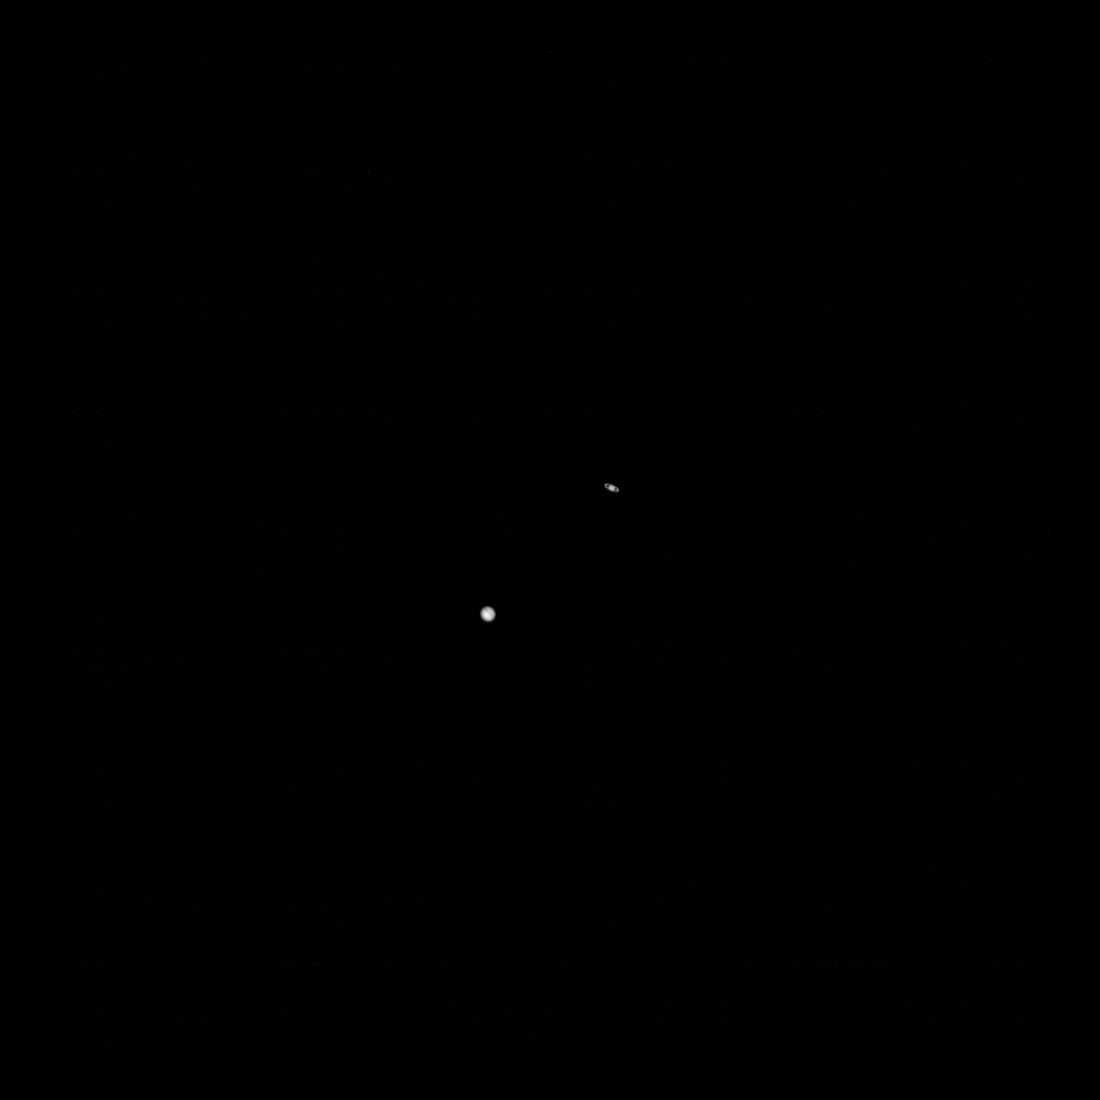 La sonda della NASA sta catturando un’immagine del “Grande Accoppiamento” di Giove e Saturno dalla Luna